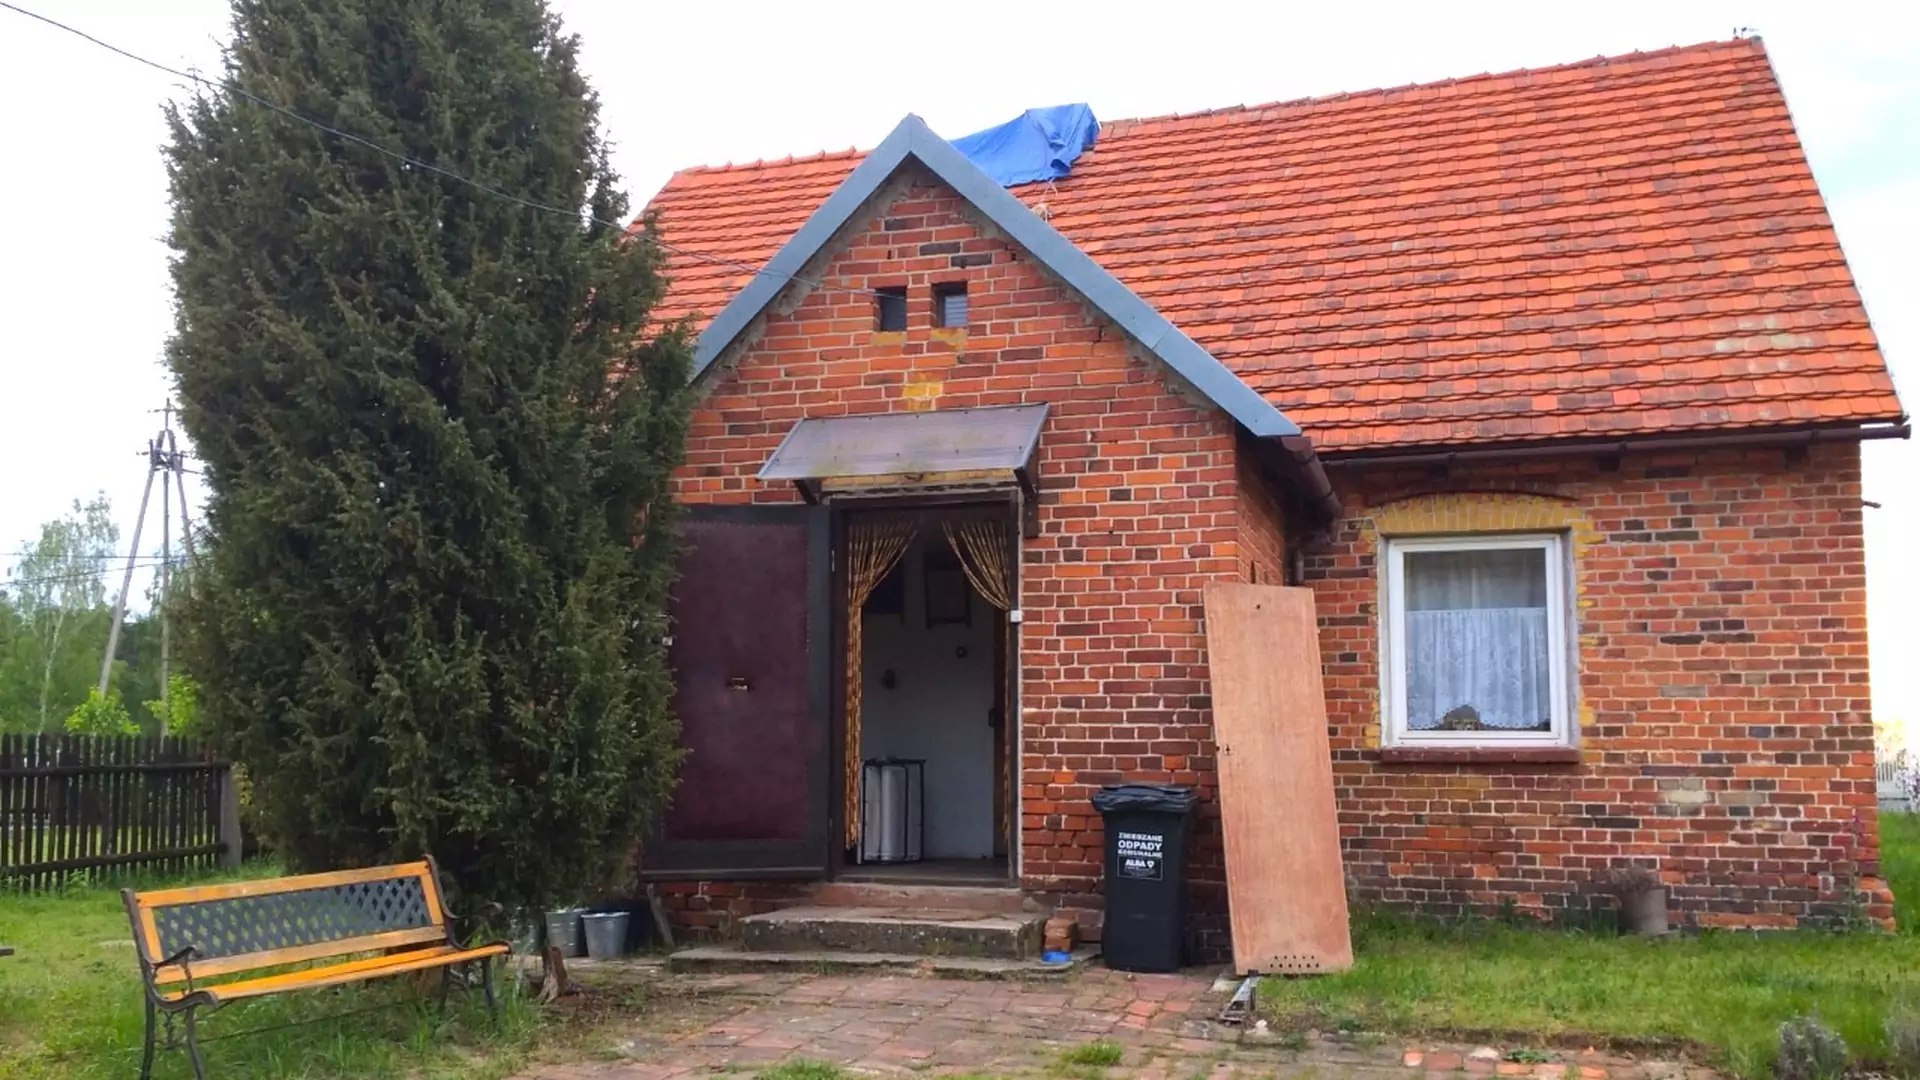 Ruinersi z Polski odnowili poniemiecki dom z cegły. Robi wrażenie